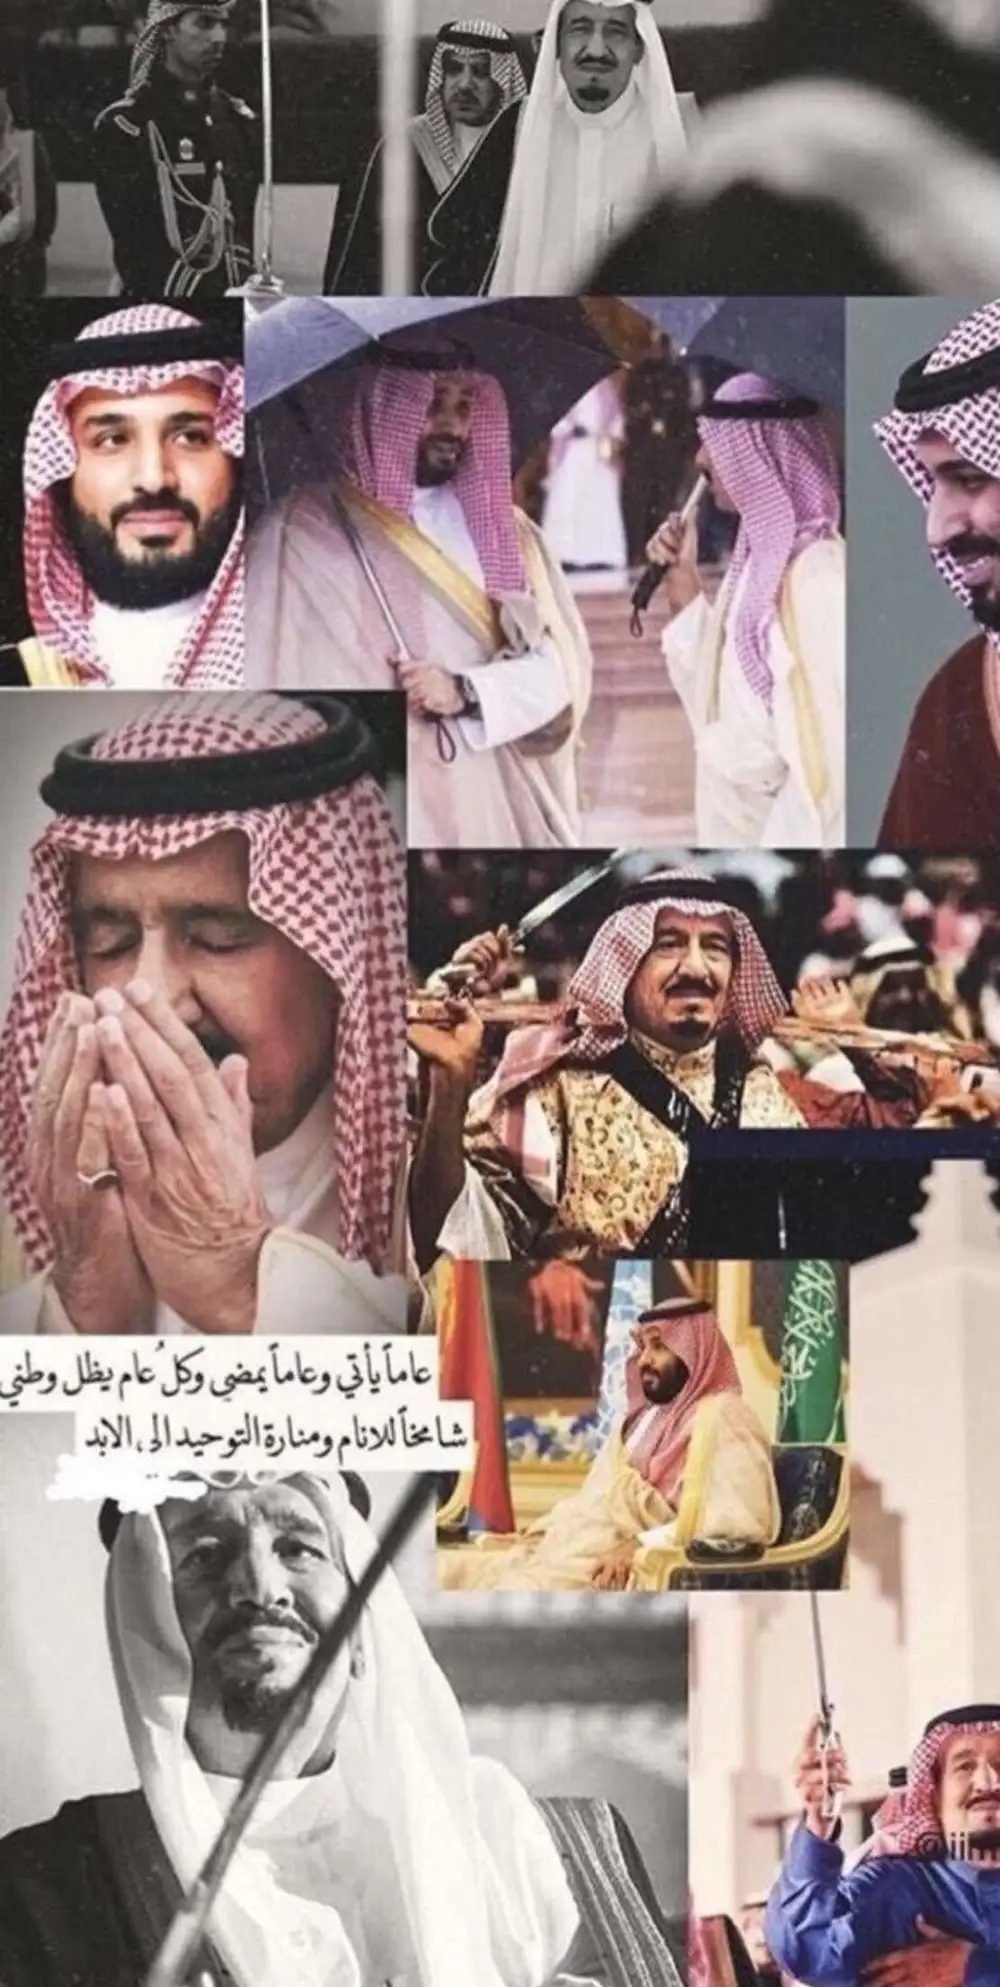 خلفيات وطنية سعودية للتصميم